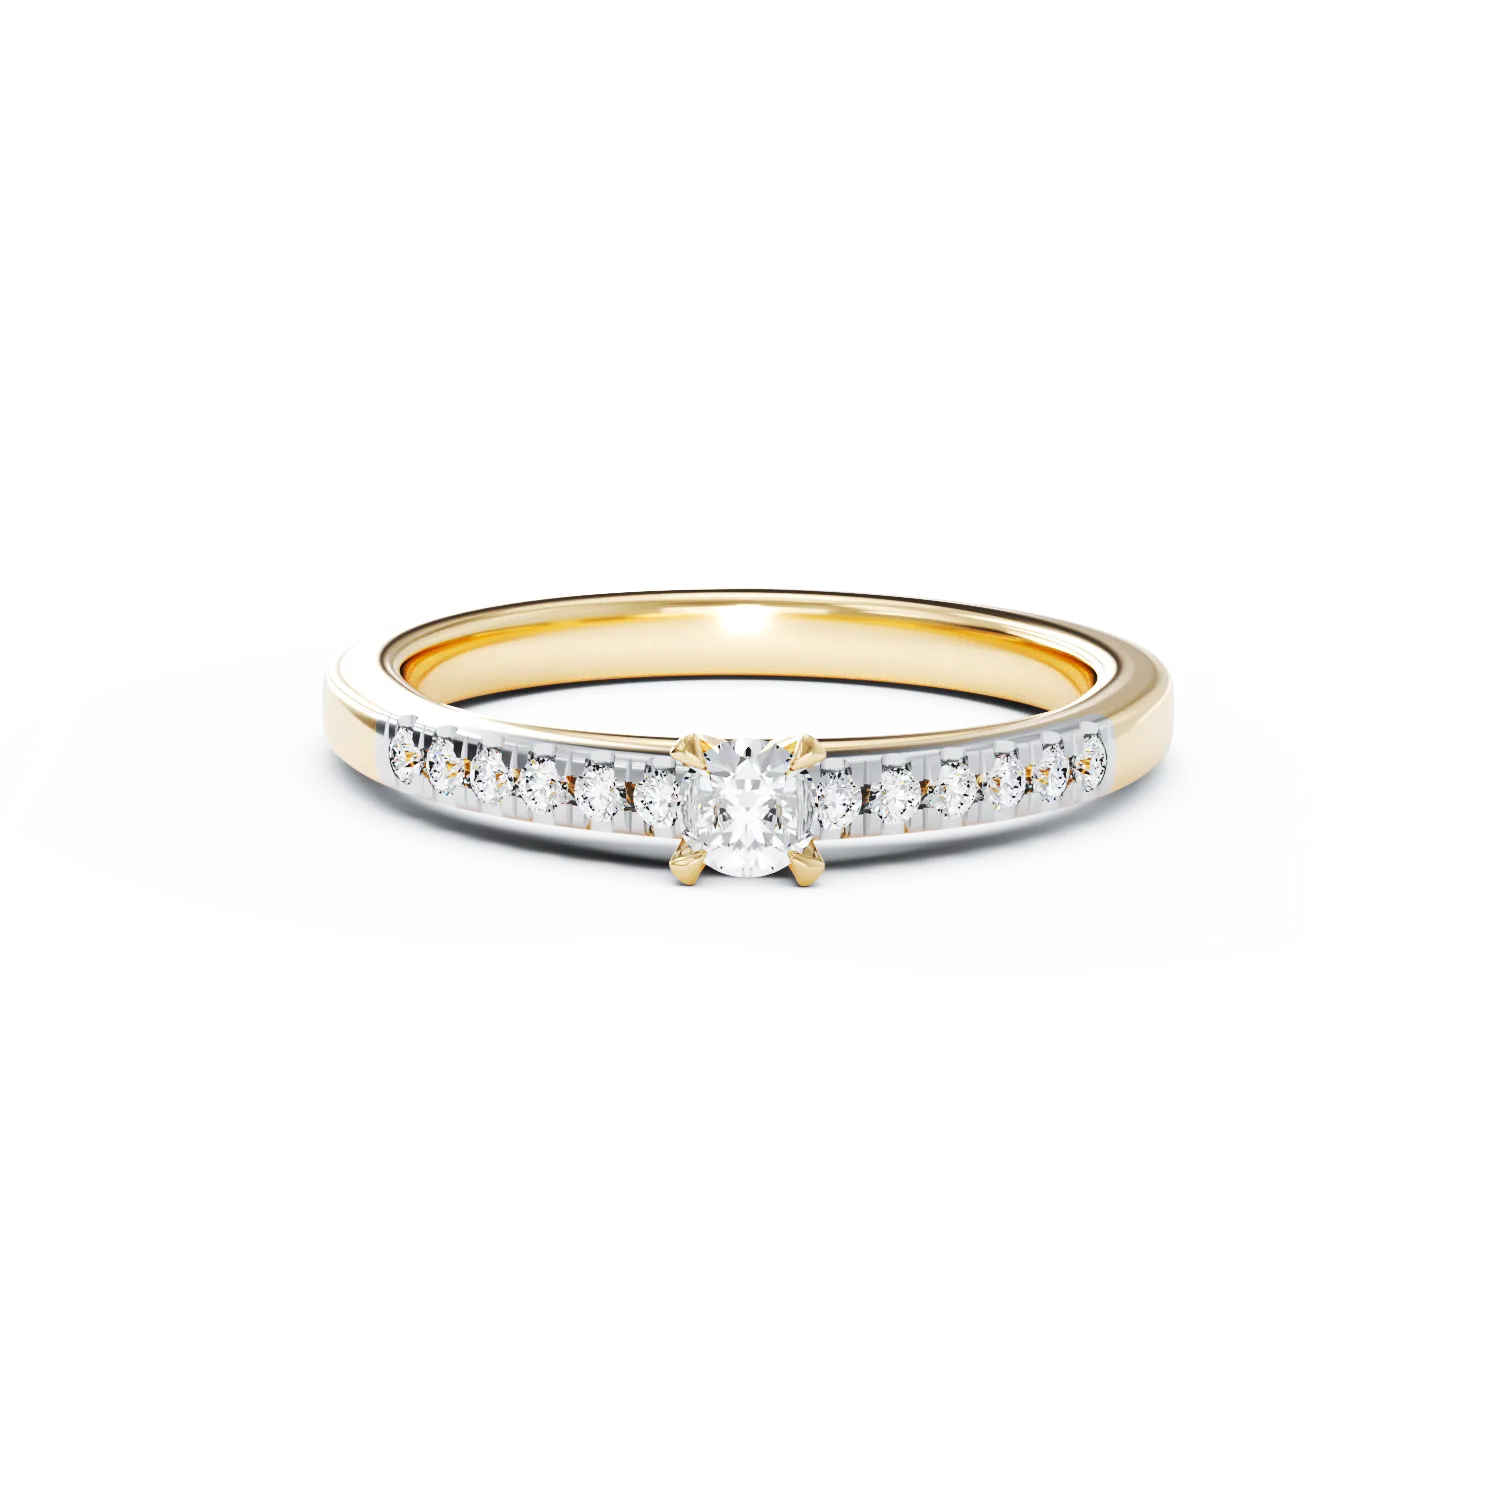 Eljegyzési gyűrű 18K-os sárga aranyból 0,3ct gyémánttal és 0,13ct gyémánttal. Gramm: 3,09